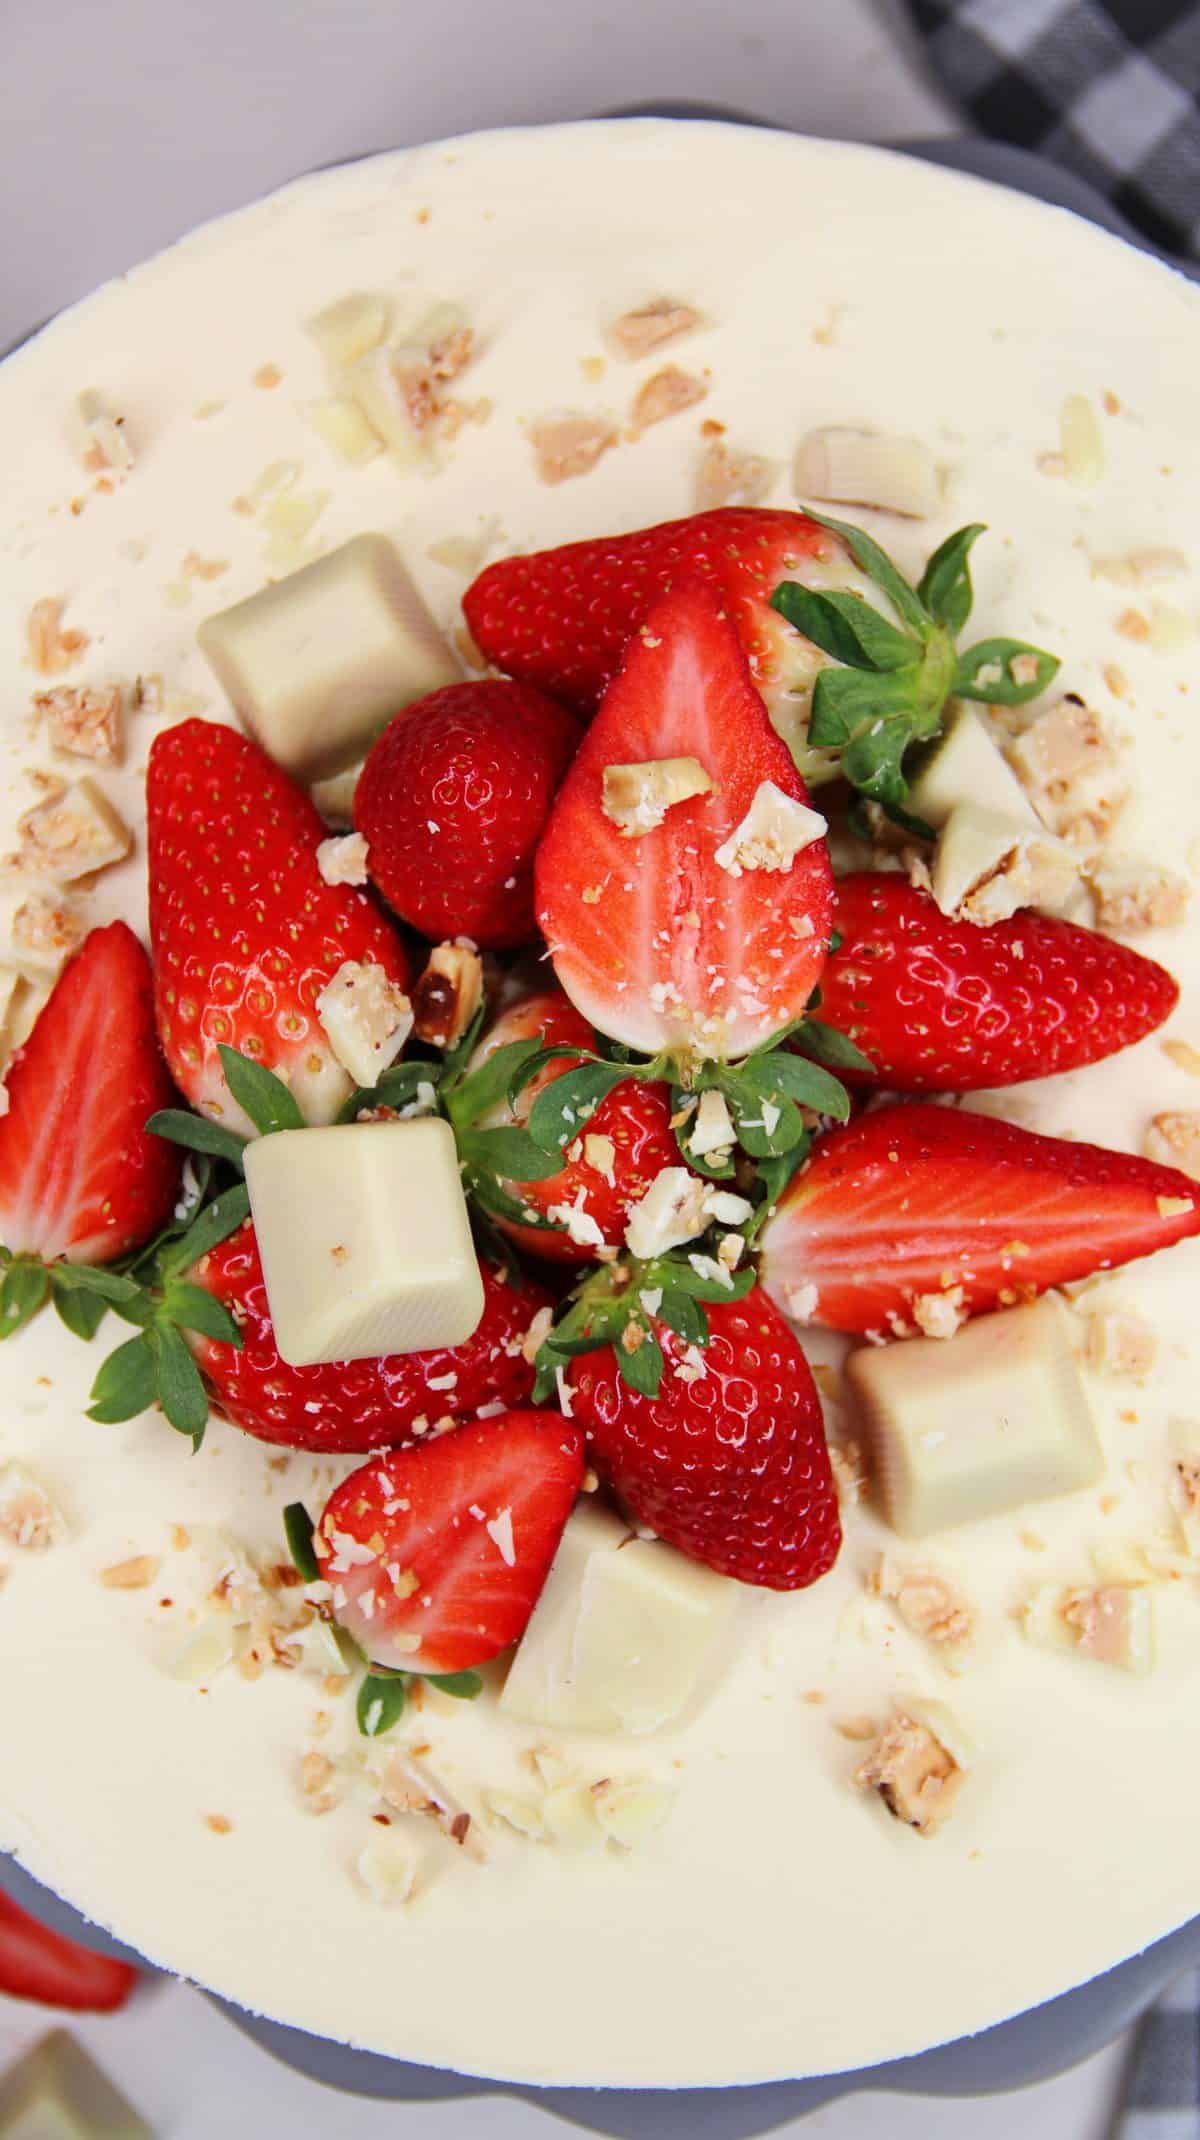 Erdbeertorte mit Fruchteinlage, Foto von der Deko: frische Erdbeeren, weiße Ferrero Küsschen und weiße Schokoraspel